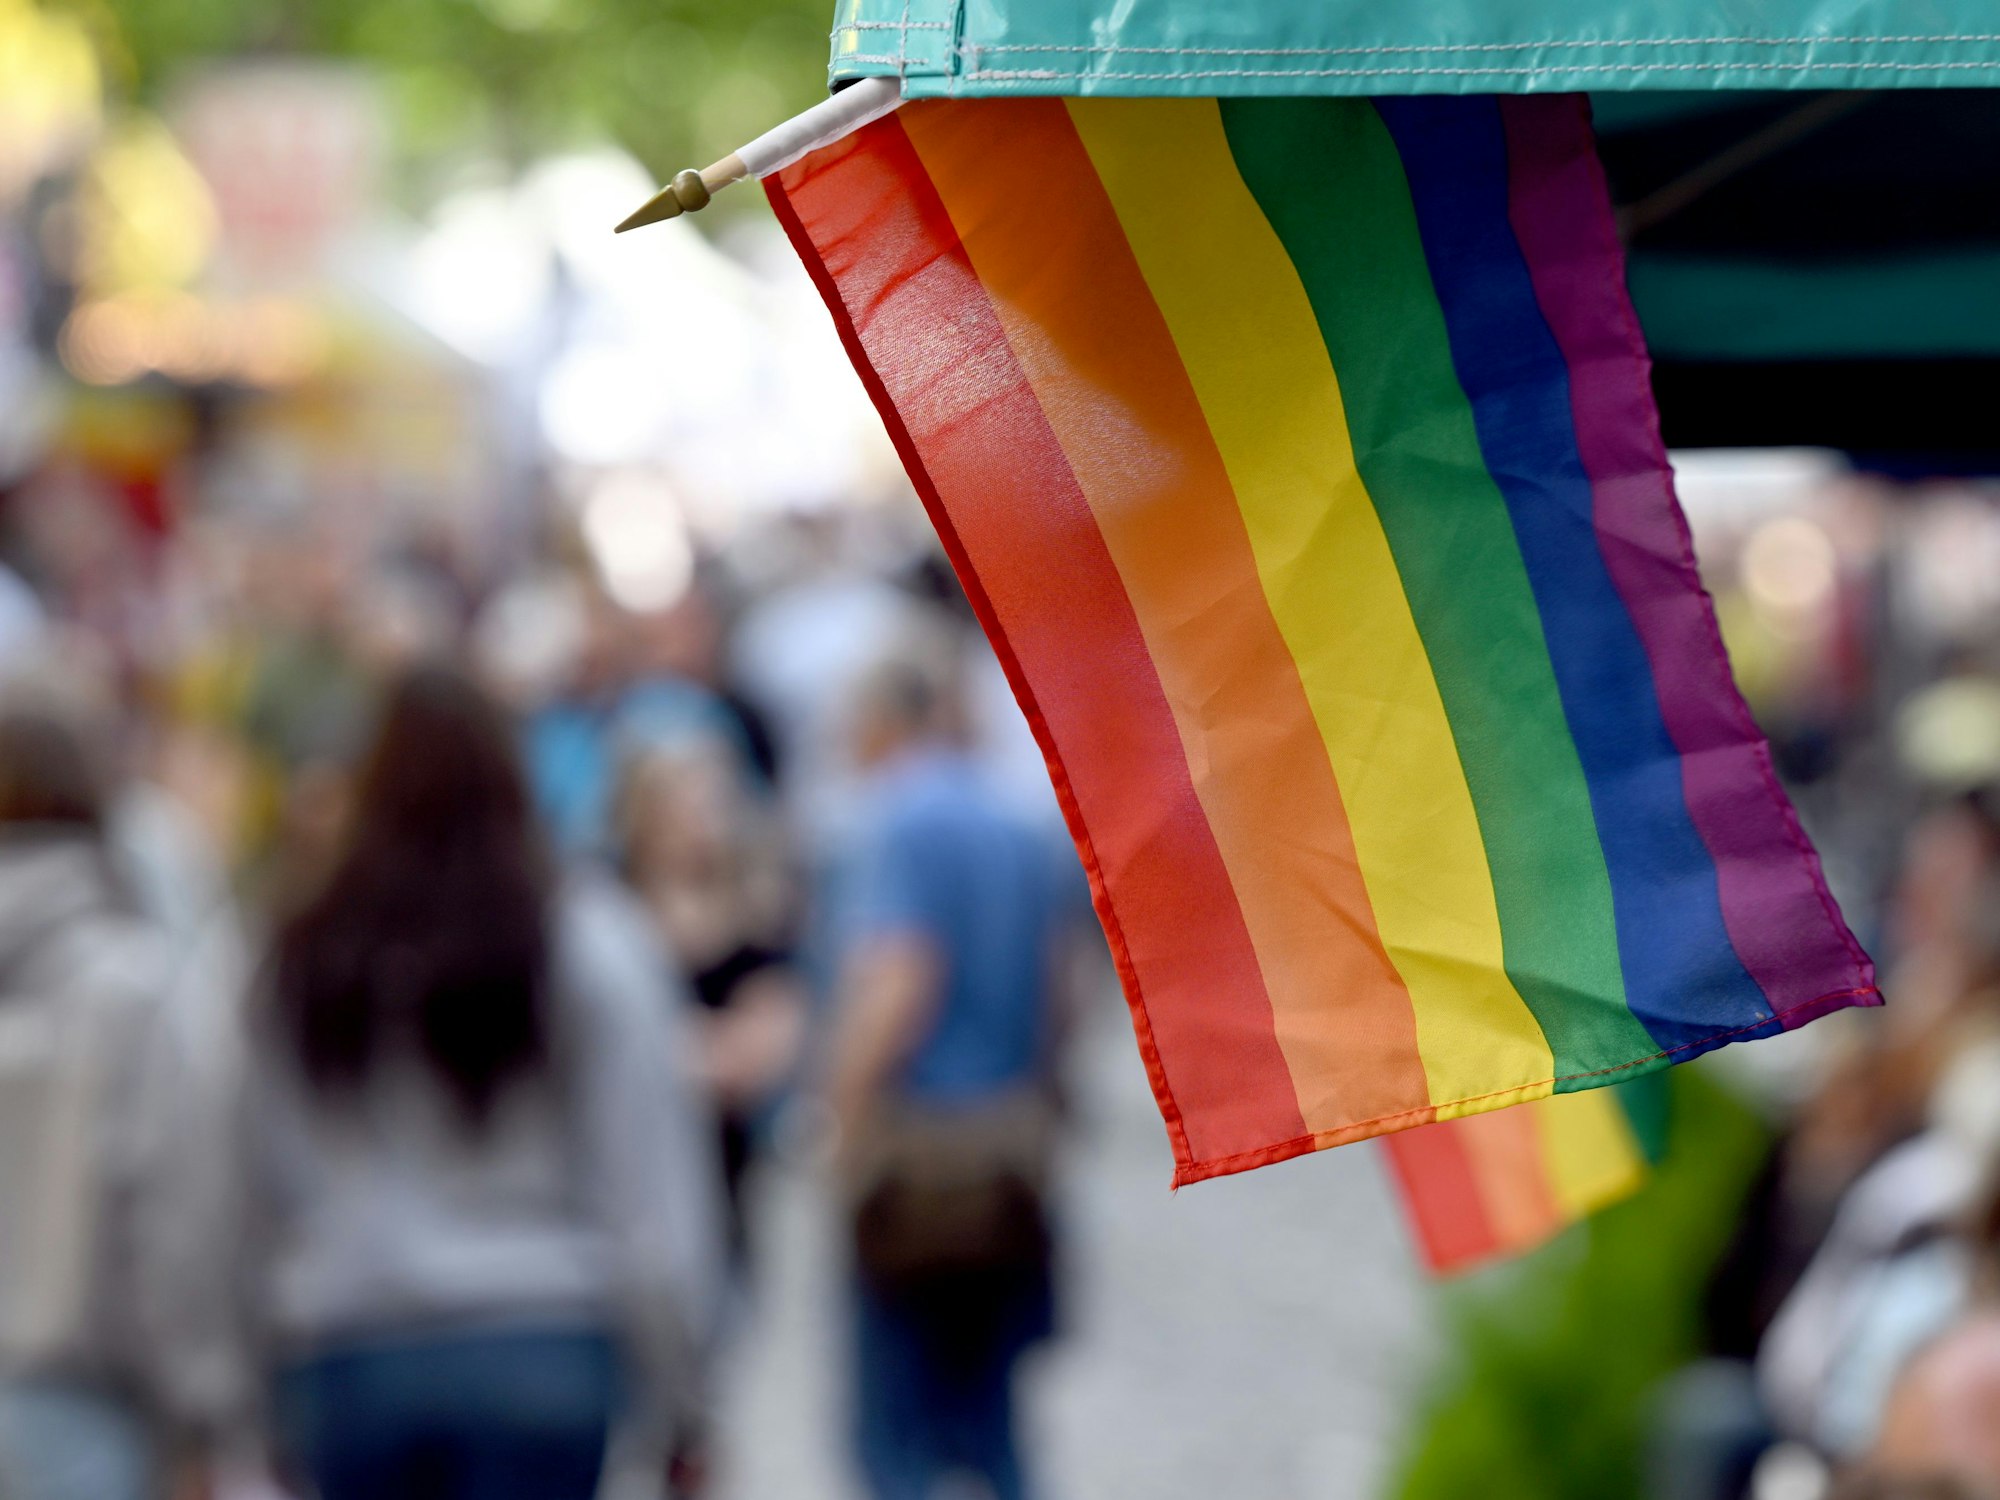 Regenbogenflaggen sind an einem Marktstand angebracht.